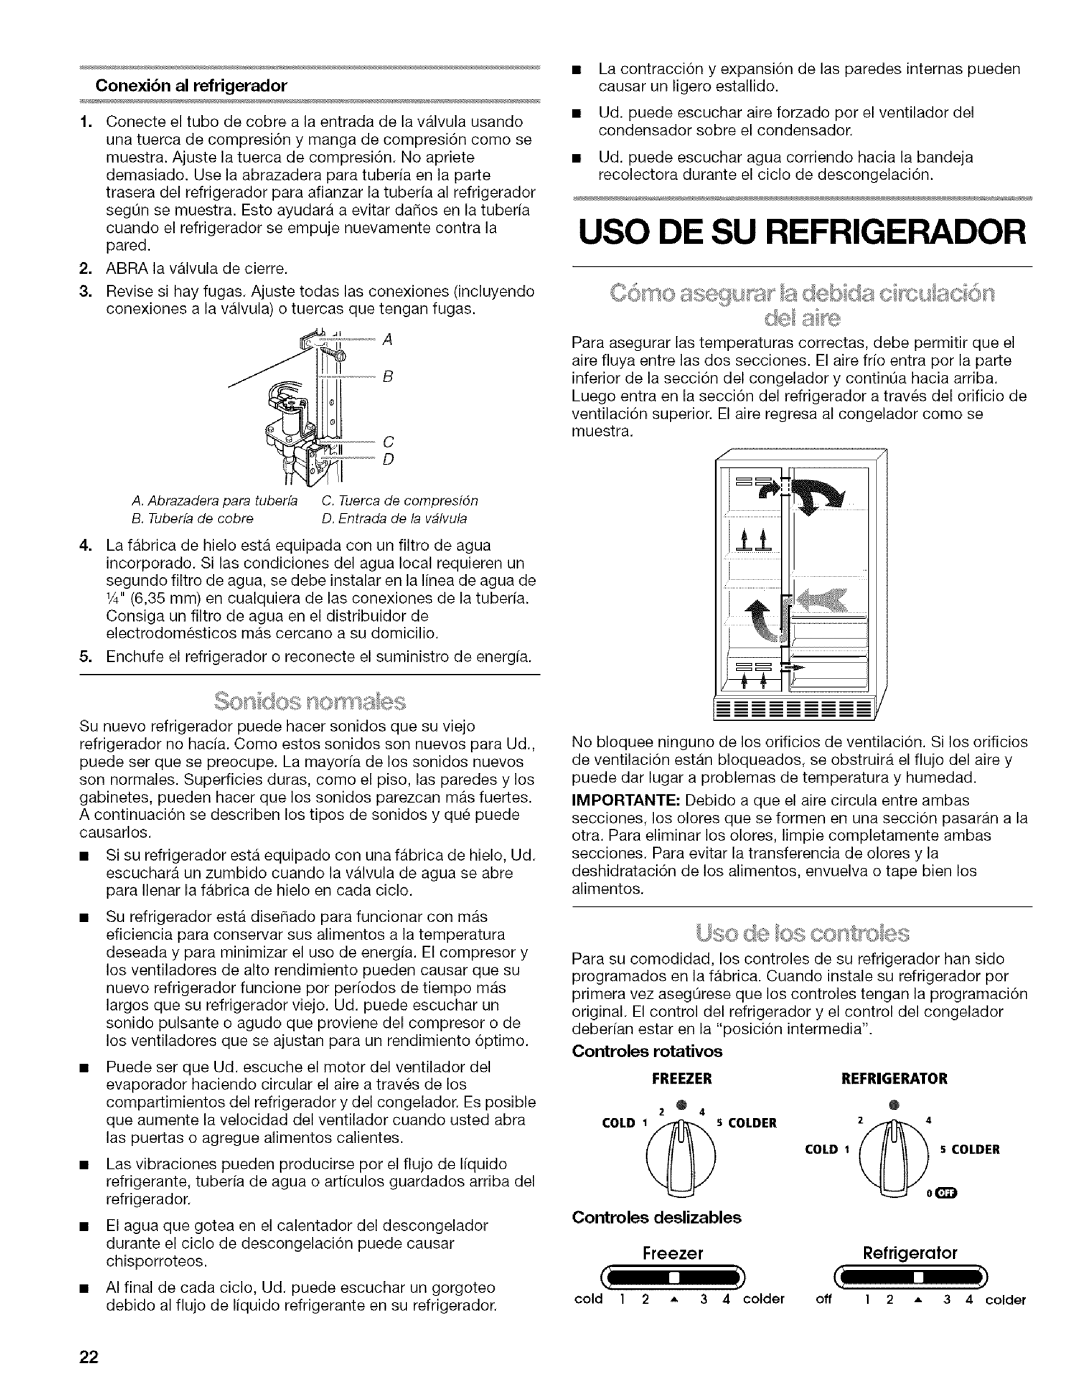 Kenmore w10144349A manual Uso De Su Refrigerador, _JSO @4 OS 0t _tYO @S, Controles deslizables, Controles rotativos 